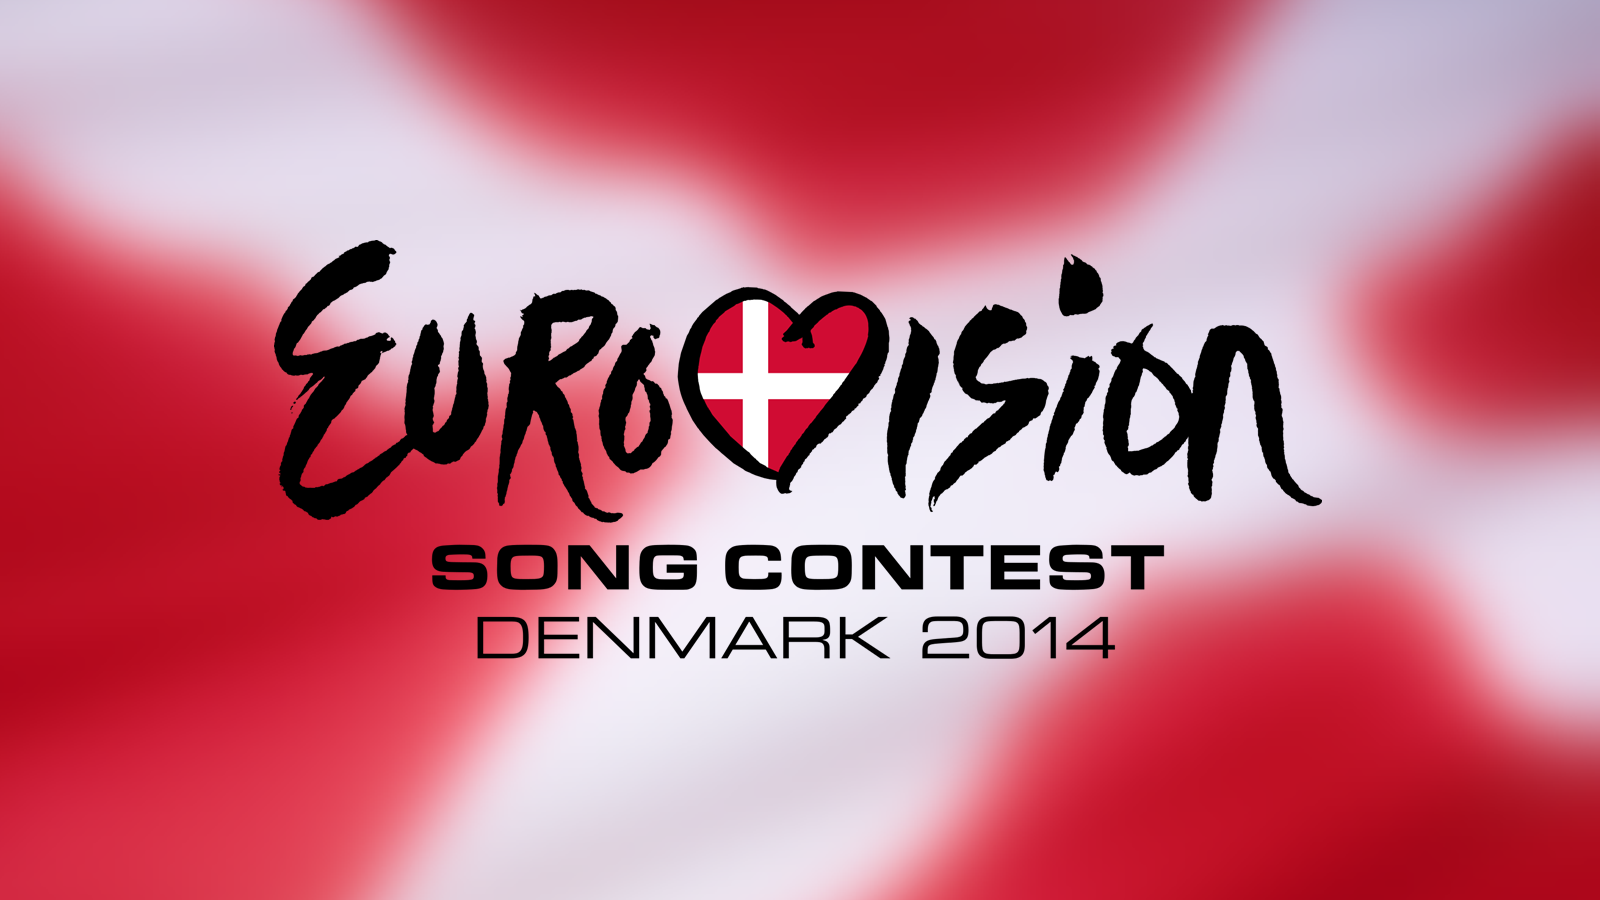 Αλλάζουν οι κανονισμοί στη Eurovision